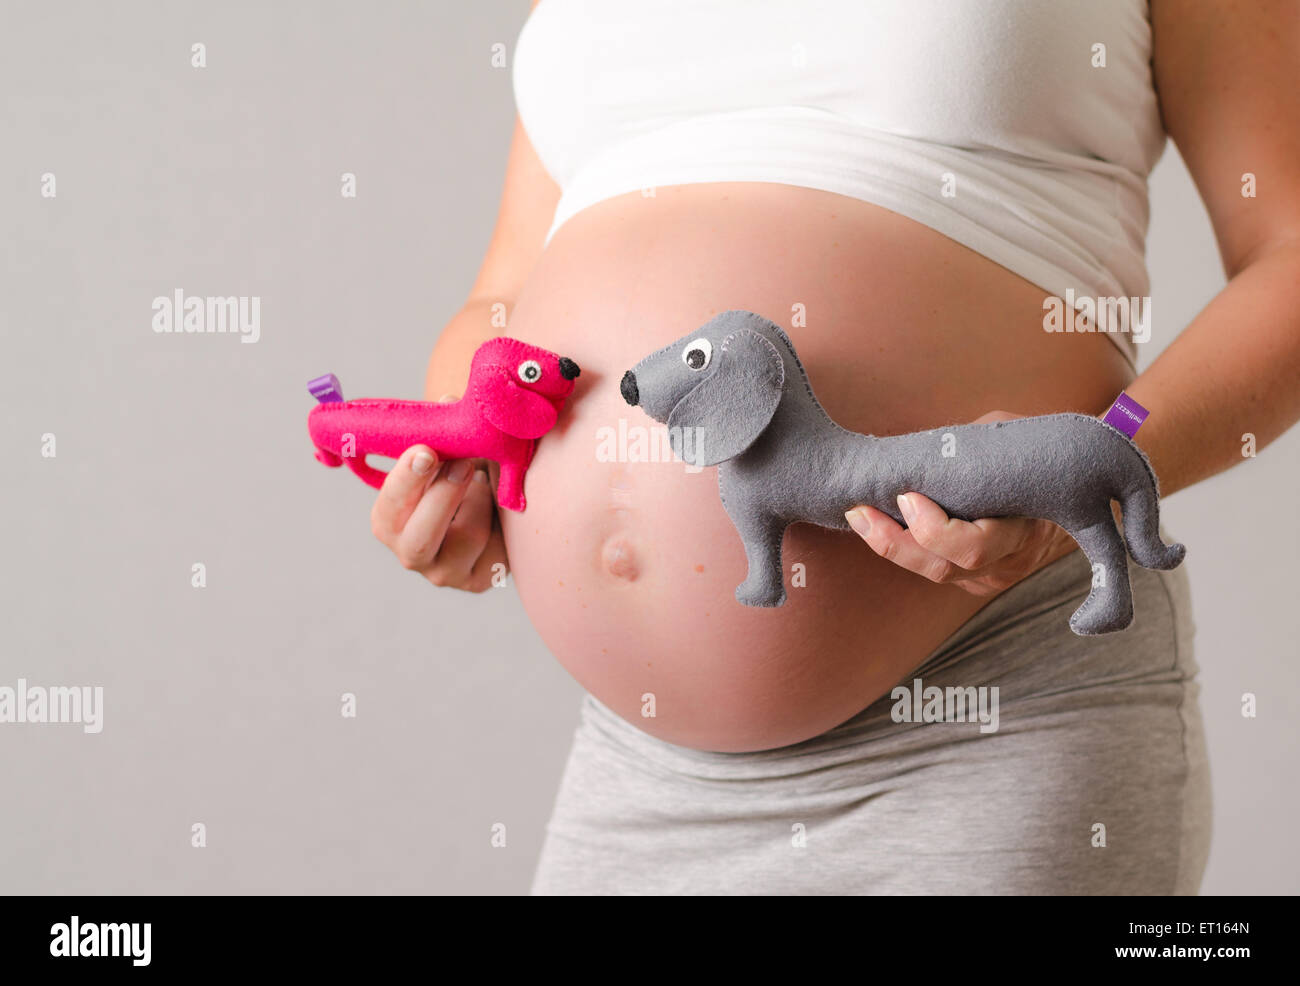 Schwangere Frau Mutterschaft Bild ihres Bauches mit einer Ente Plüschtier Zwillinge Stockfoto